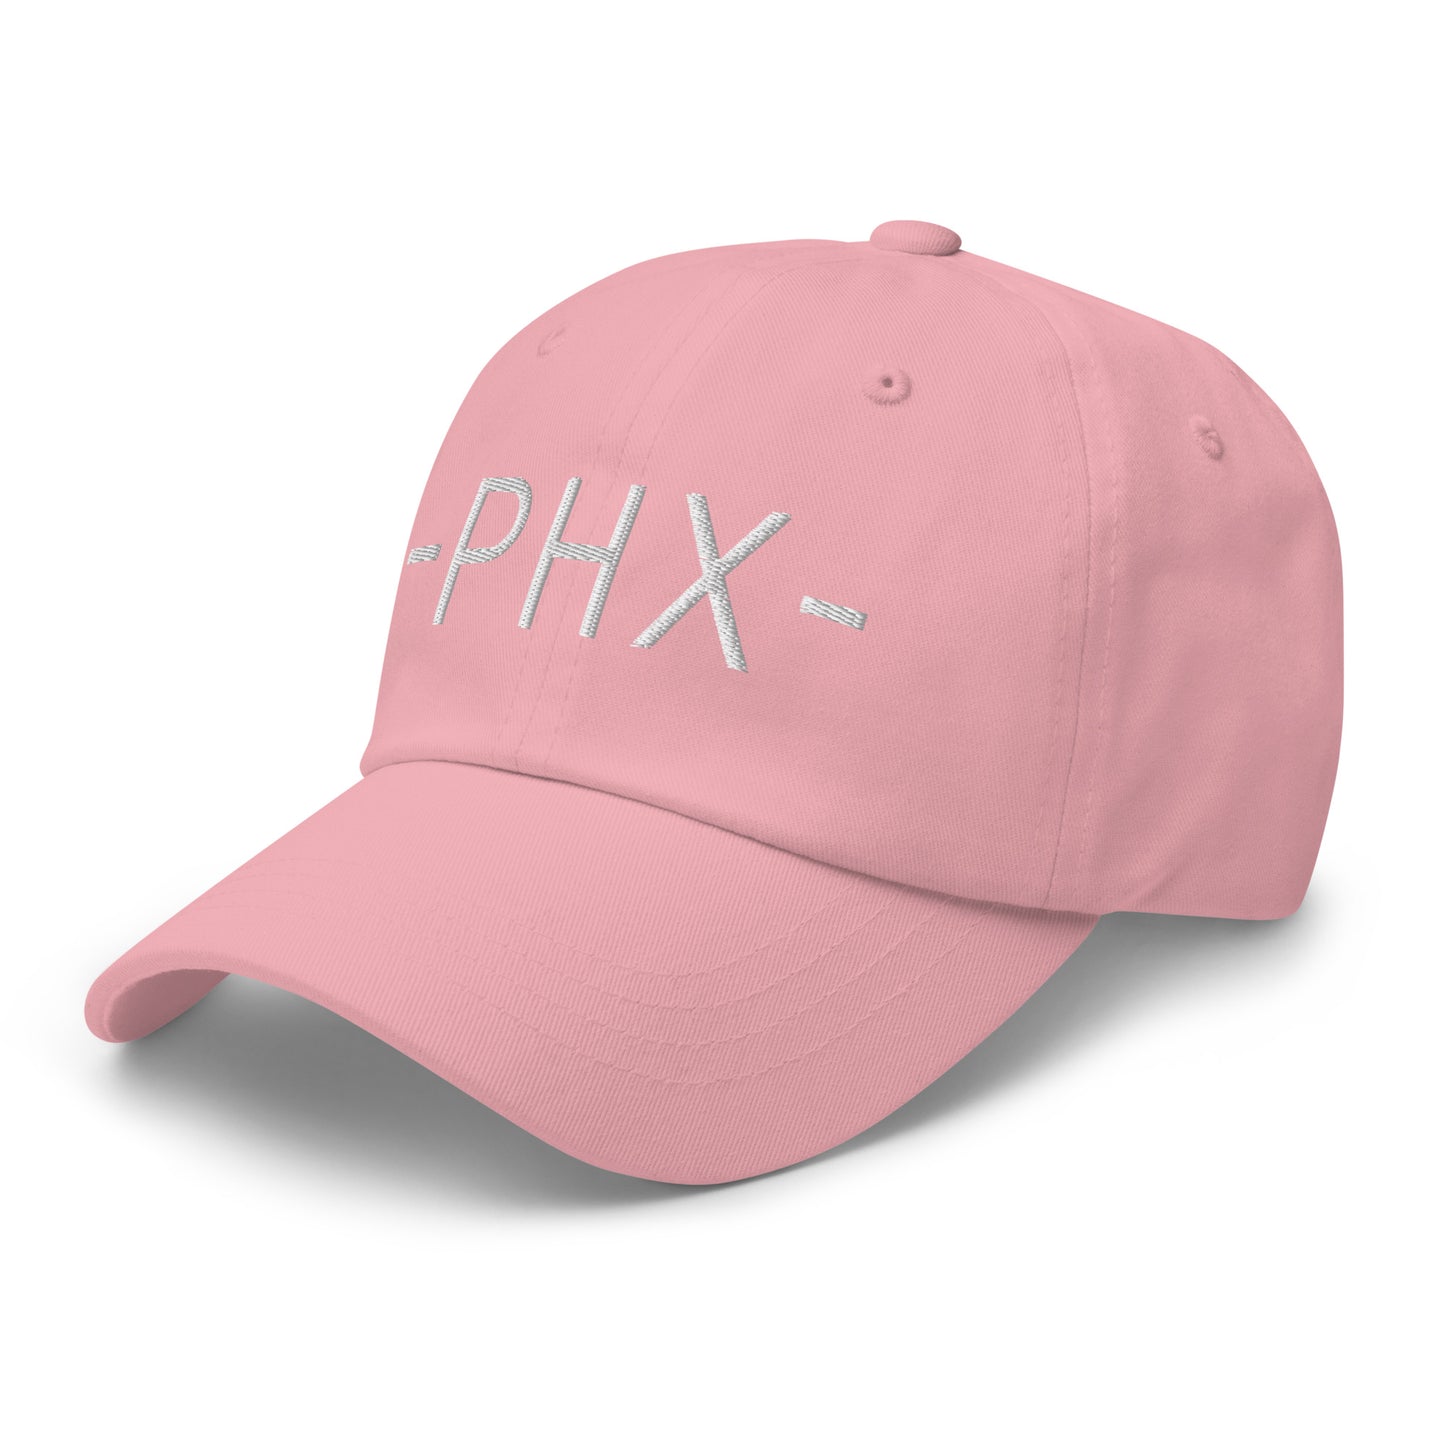 Souvenir Baseball Cap - White • PHX Phoenix • YHM Designs - Image 26